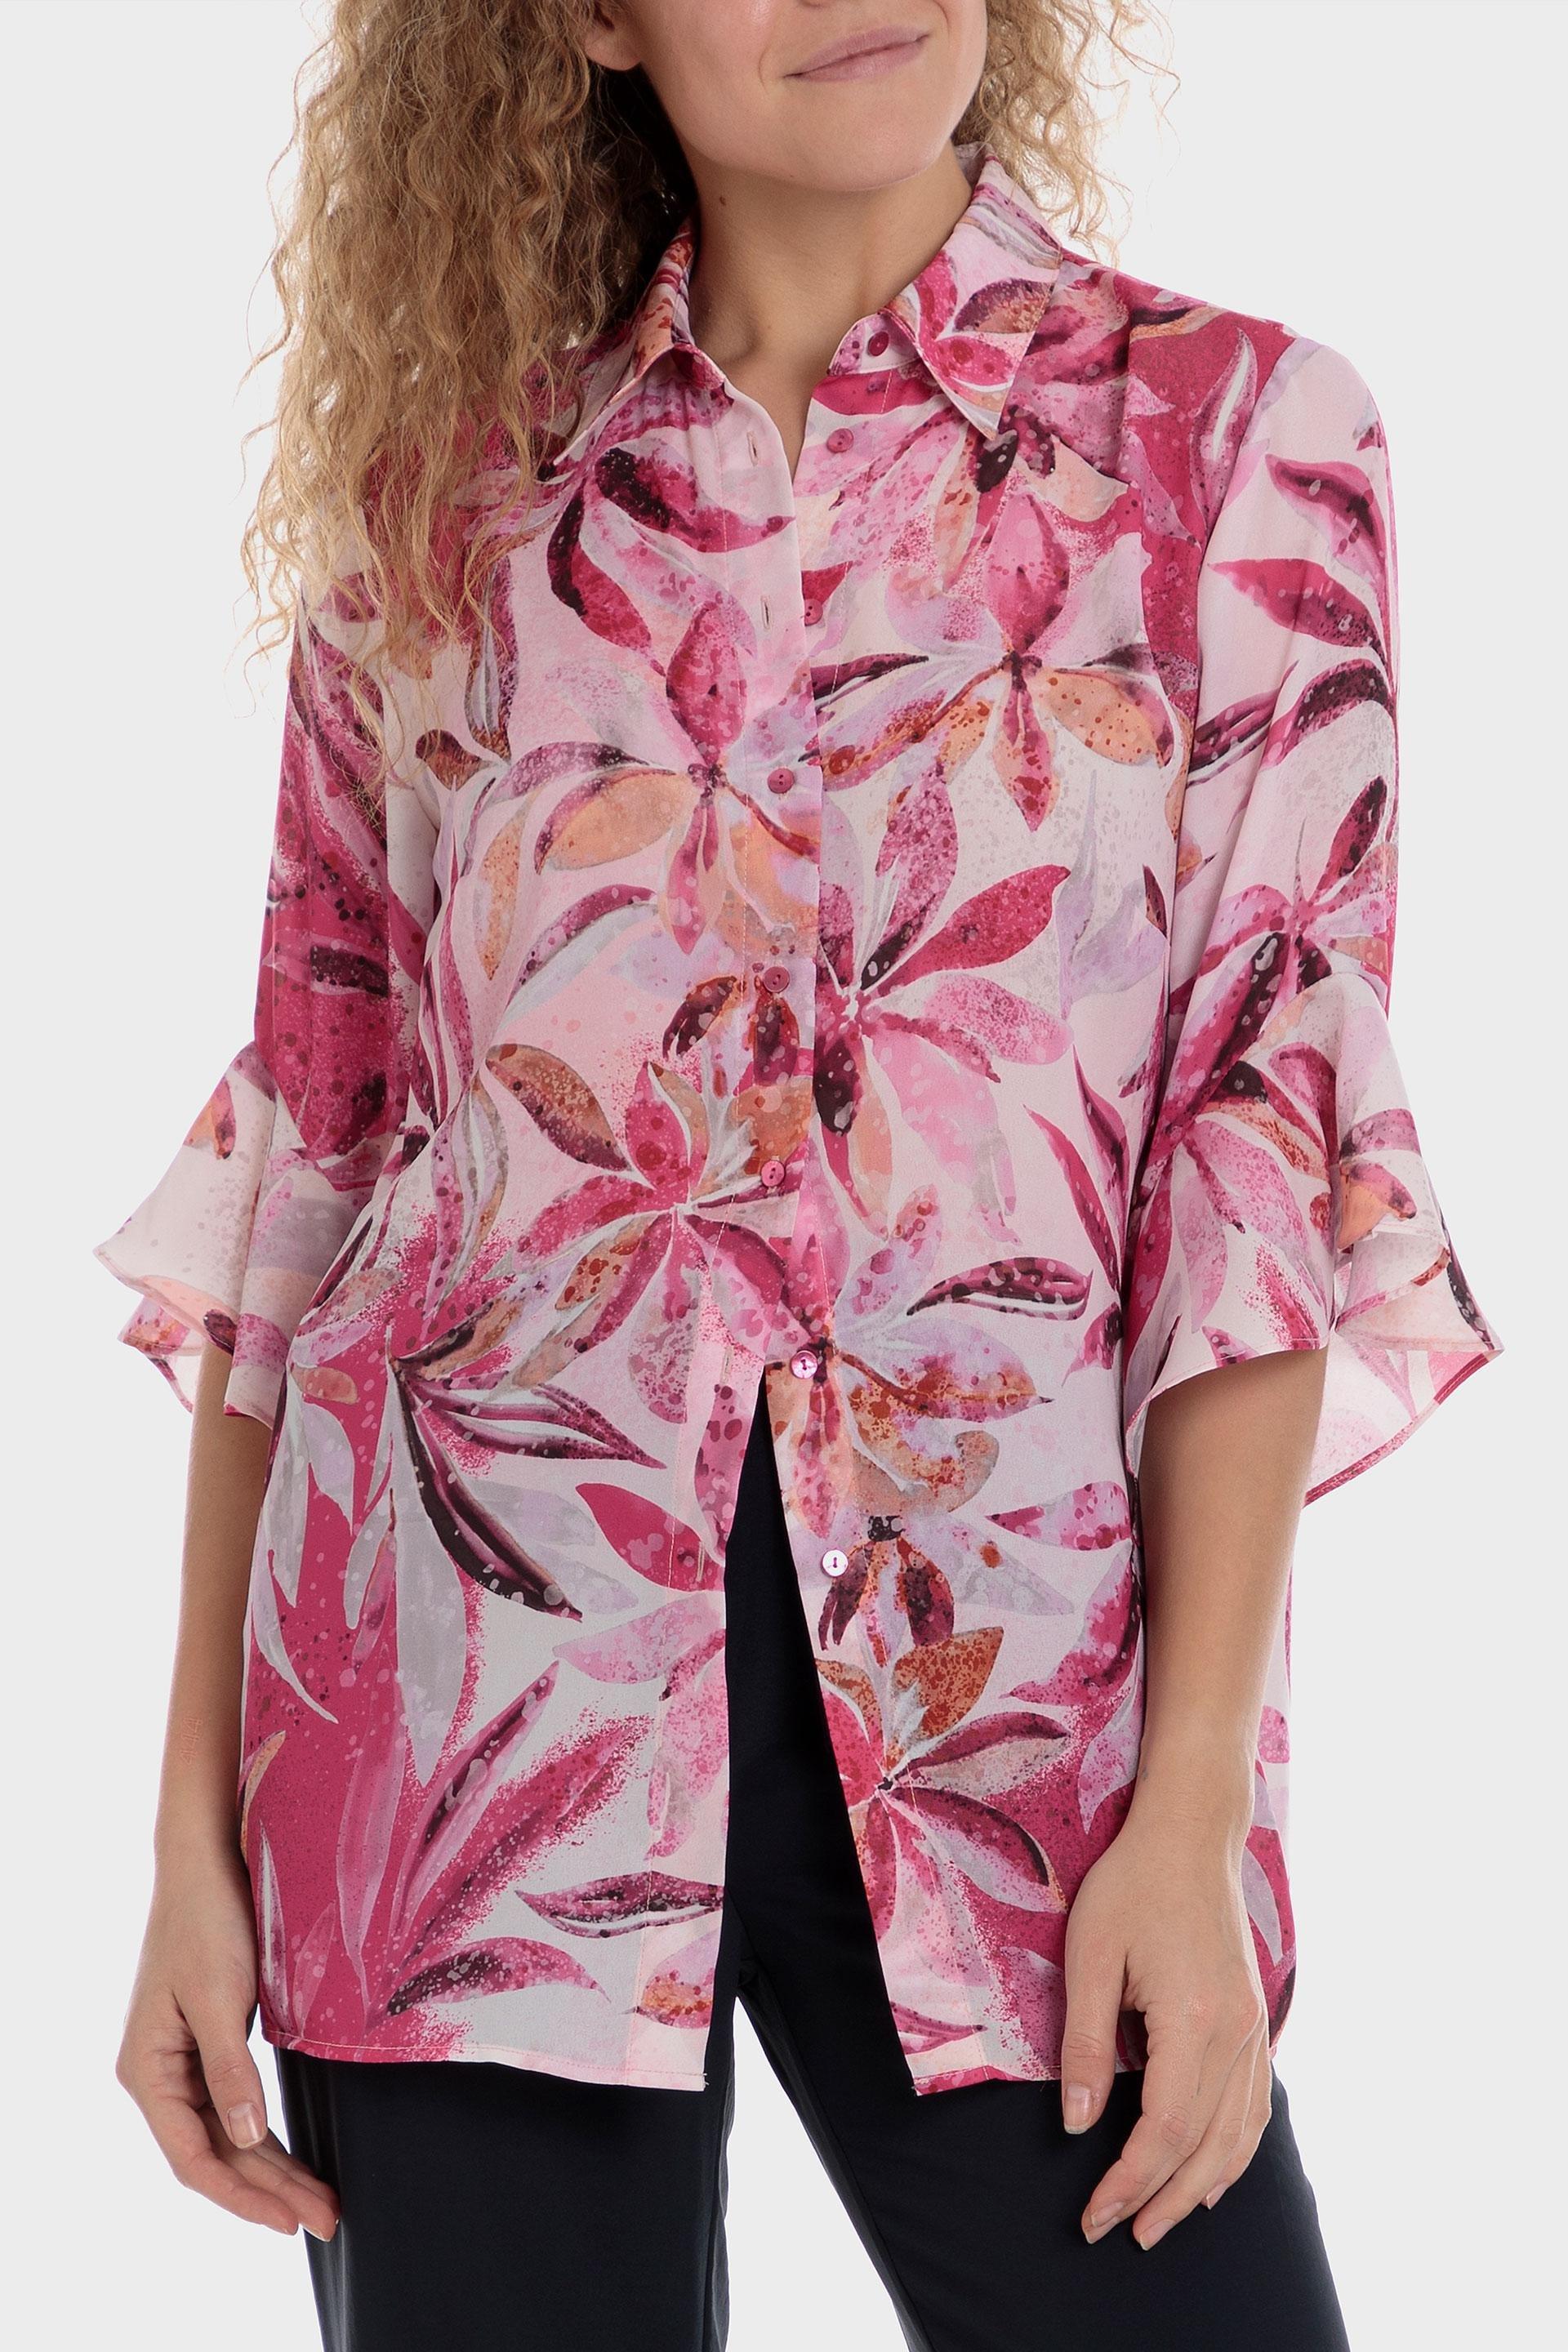 Punt Roma - Multicolour Floral Print Shirt